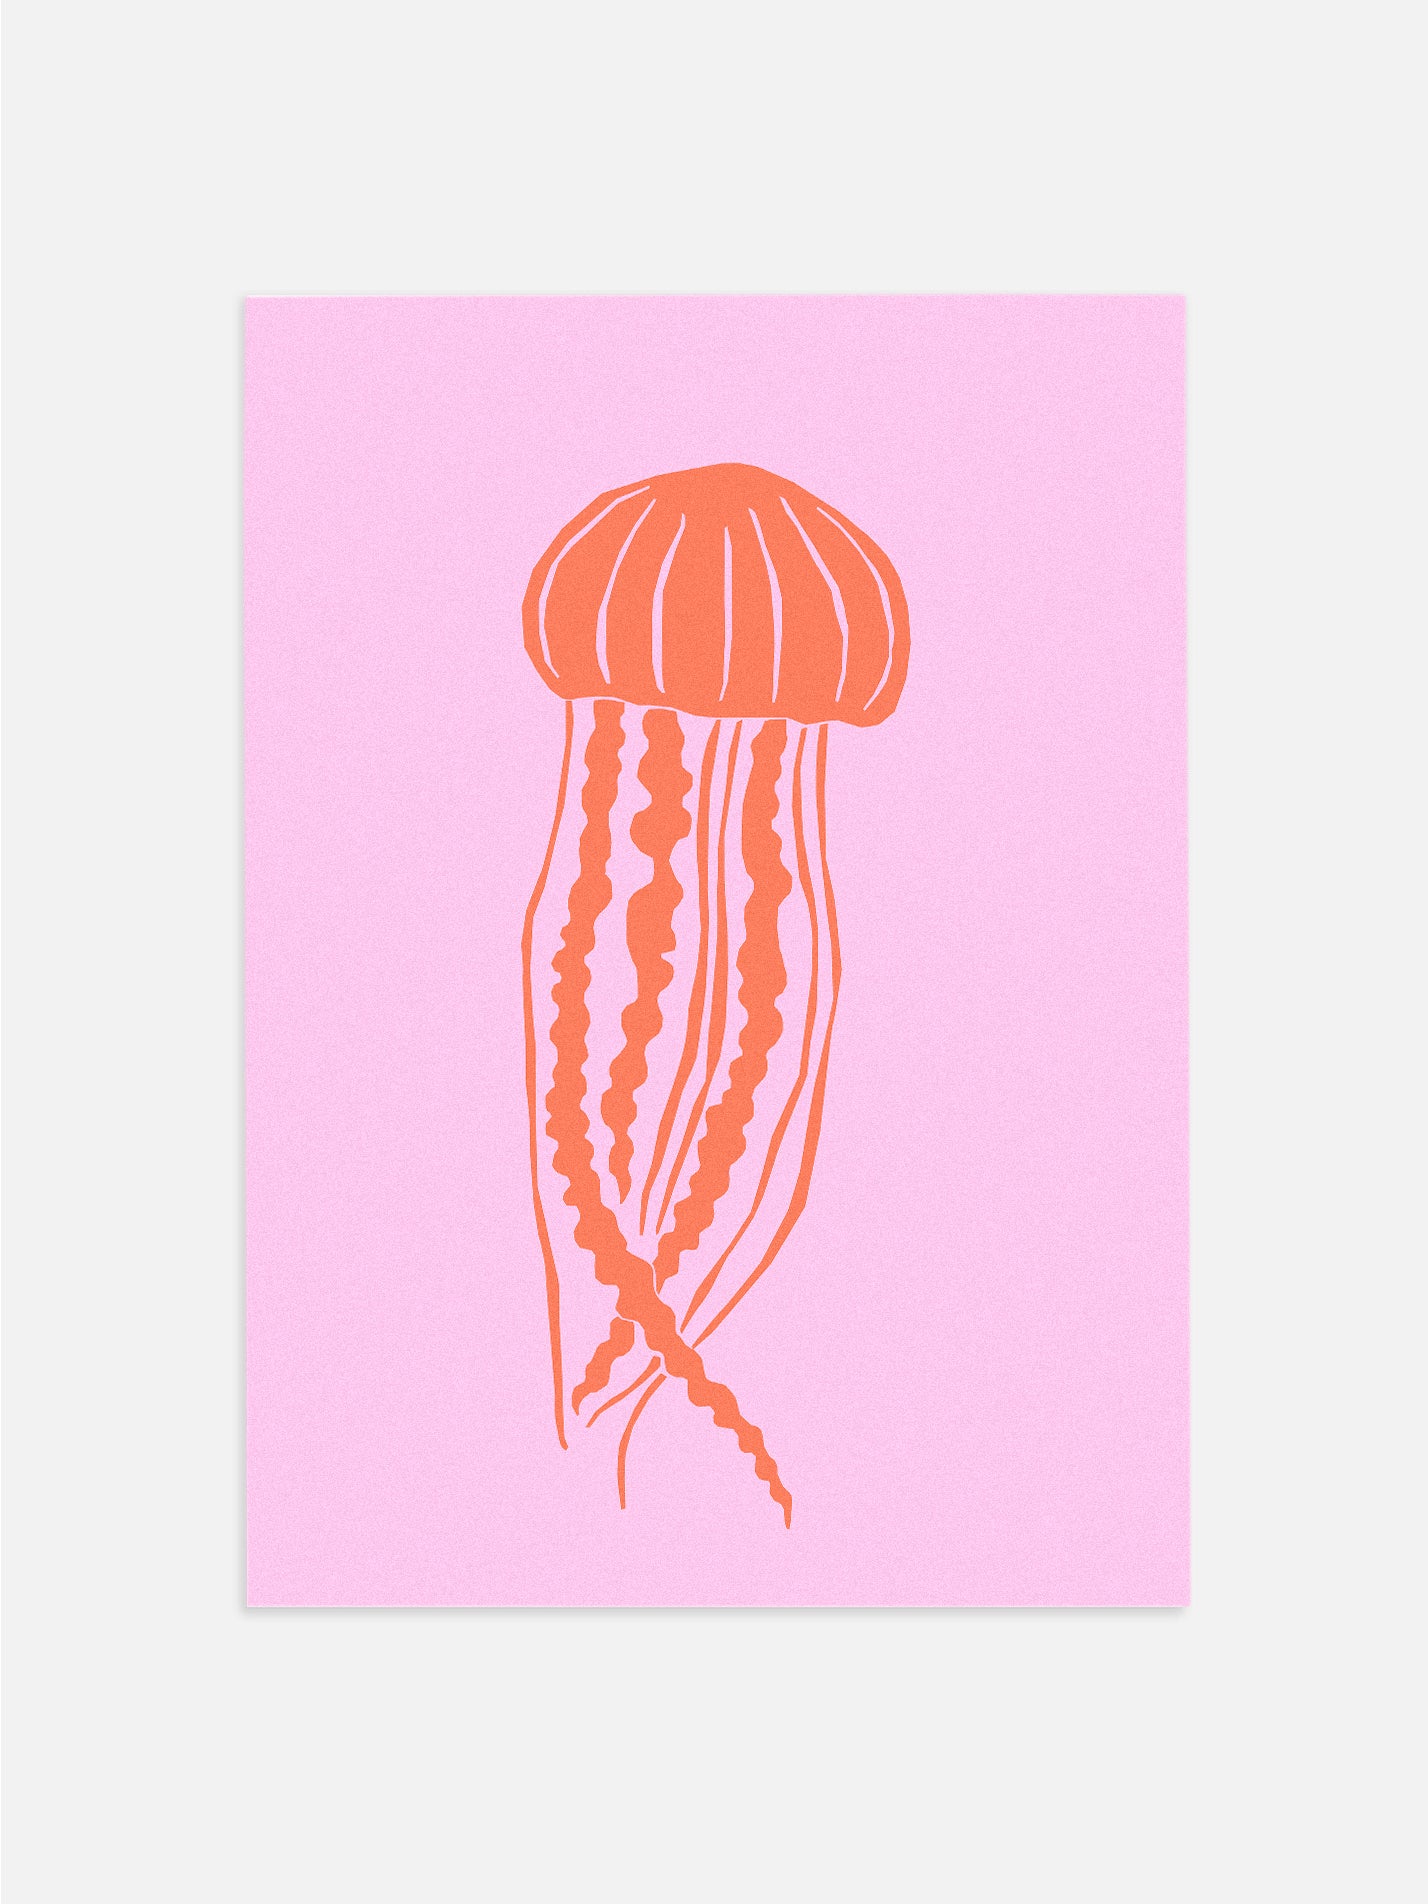 Ocean Life: Jellyfish